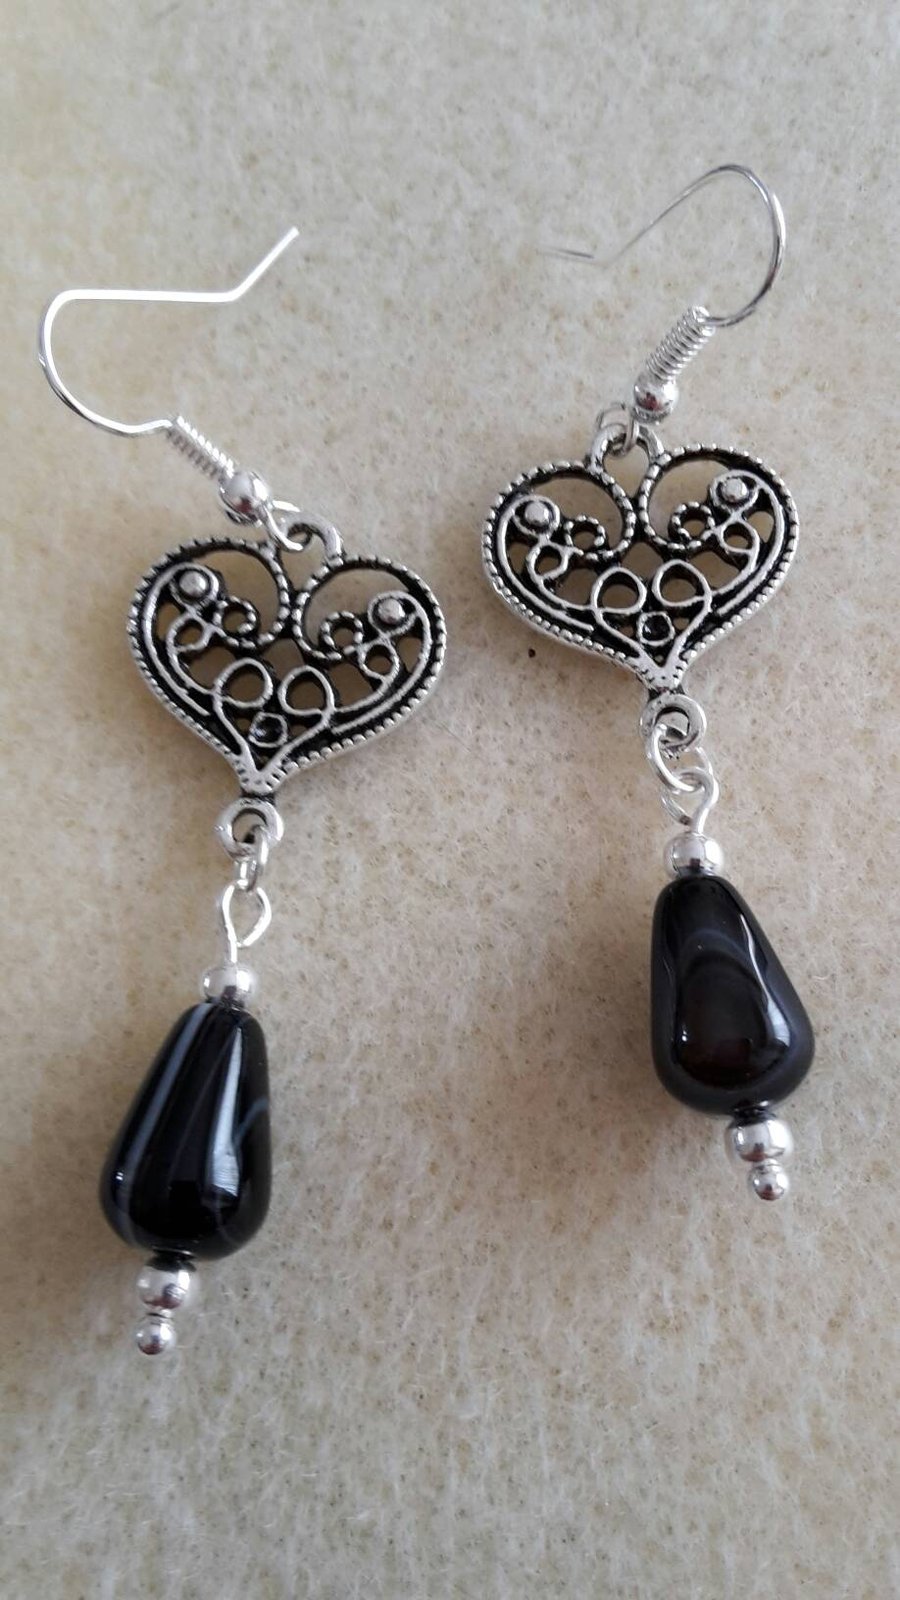 Black banded agate earrings 